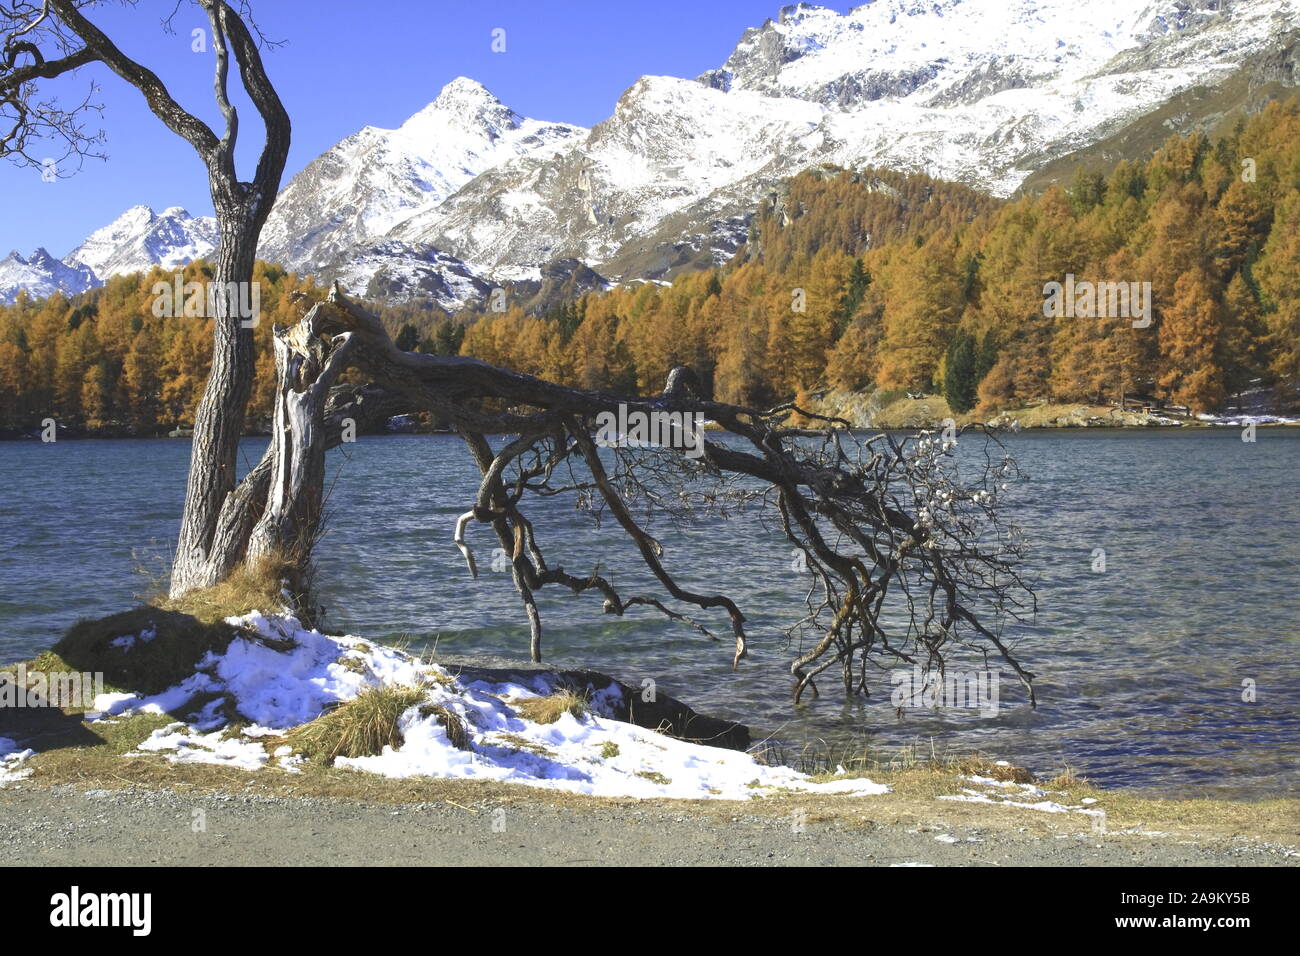 Herbststimmung am idyllischen Silsersee im Oberengadin Foto Stock